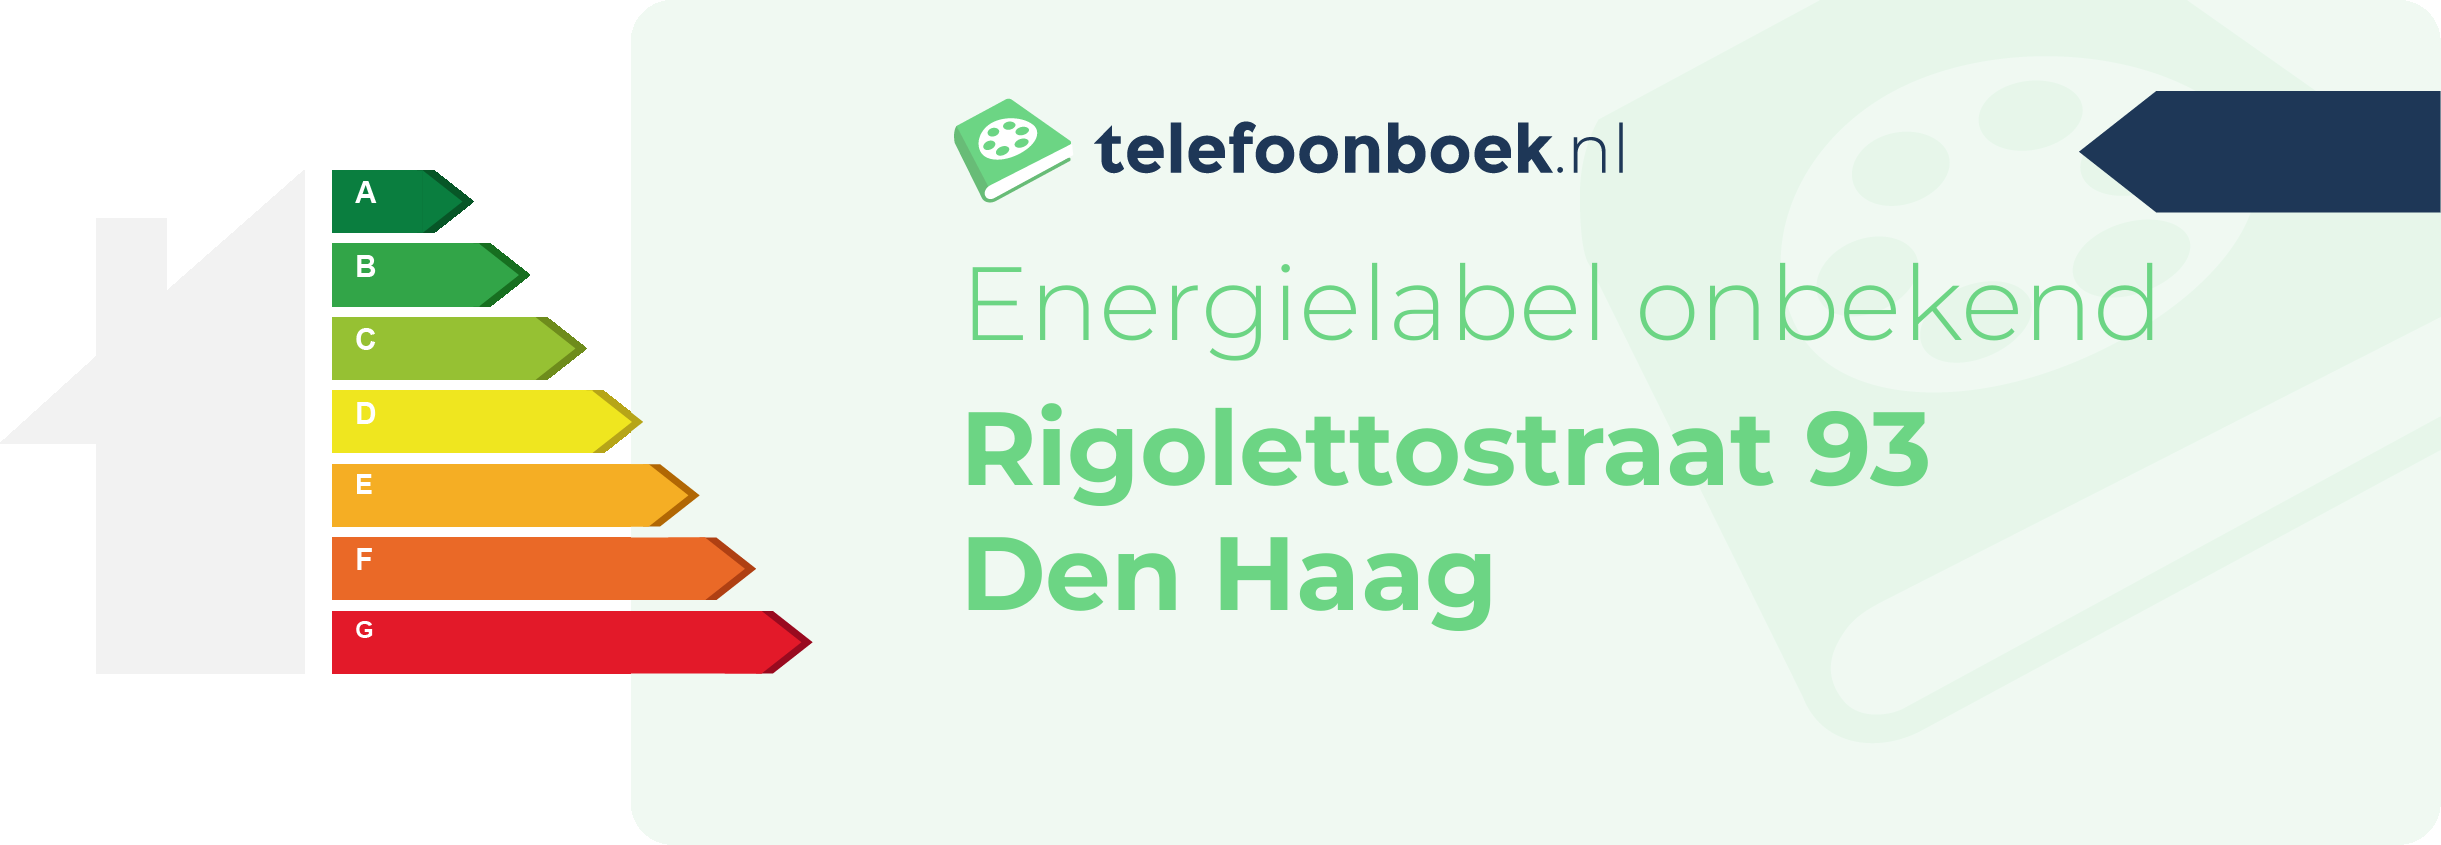 Energielabel Rigolettostraat 93 Den Haag